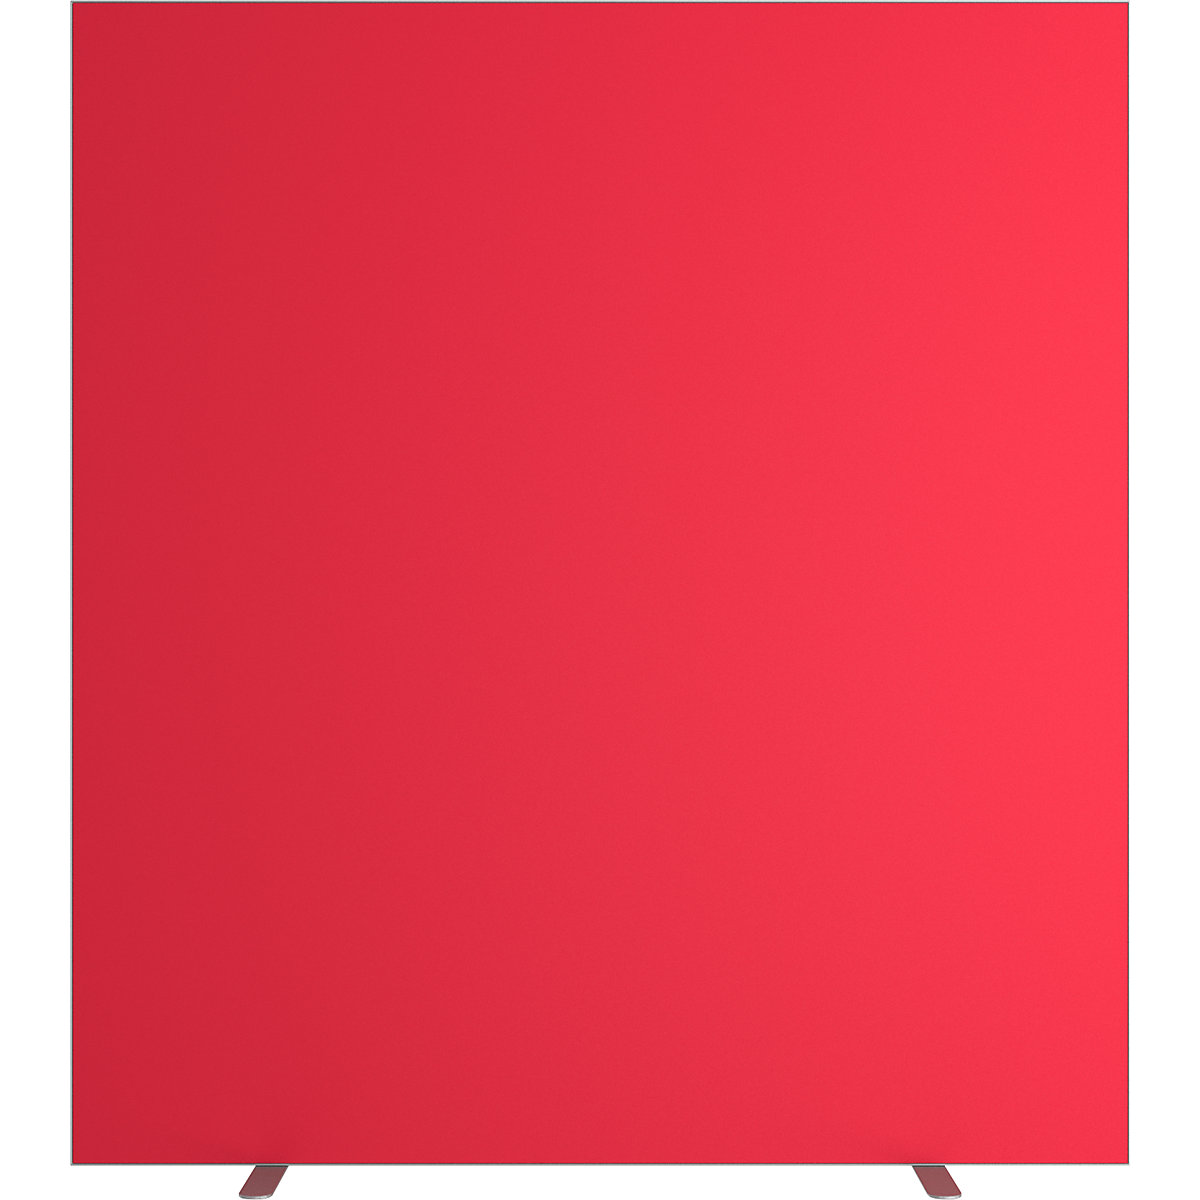 Pared separadora easyScreen, monocolor, rojo, anchura 1600 mm-9